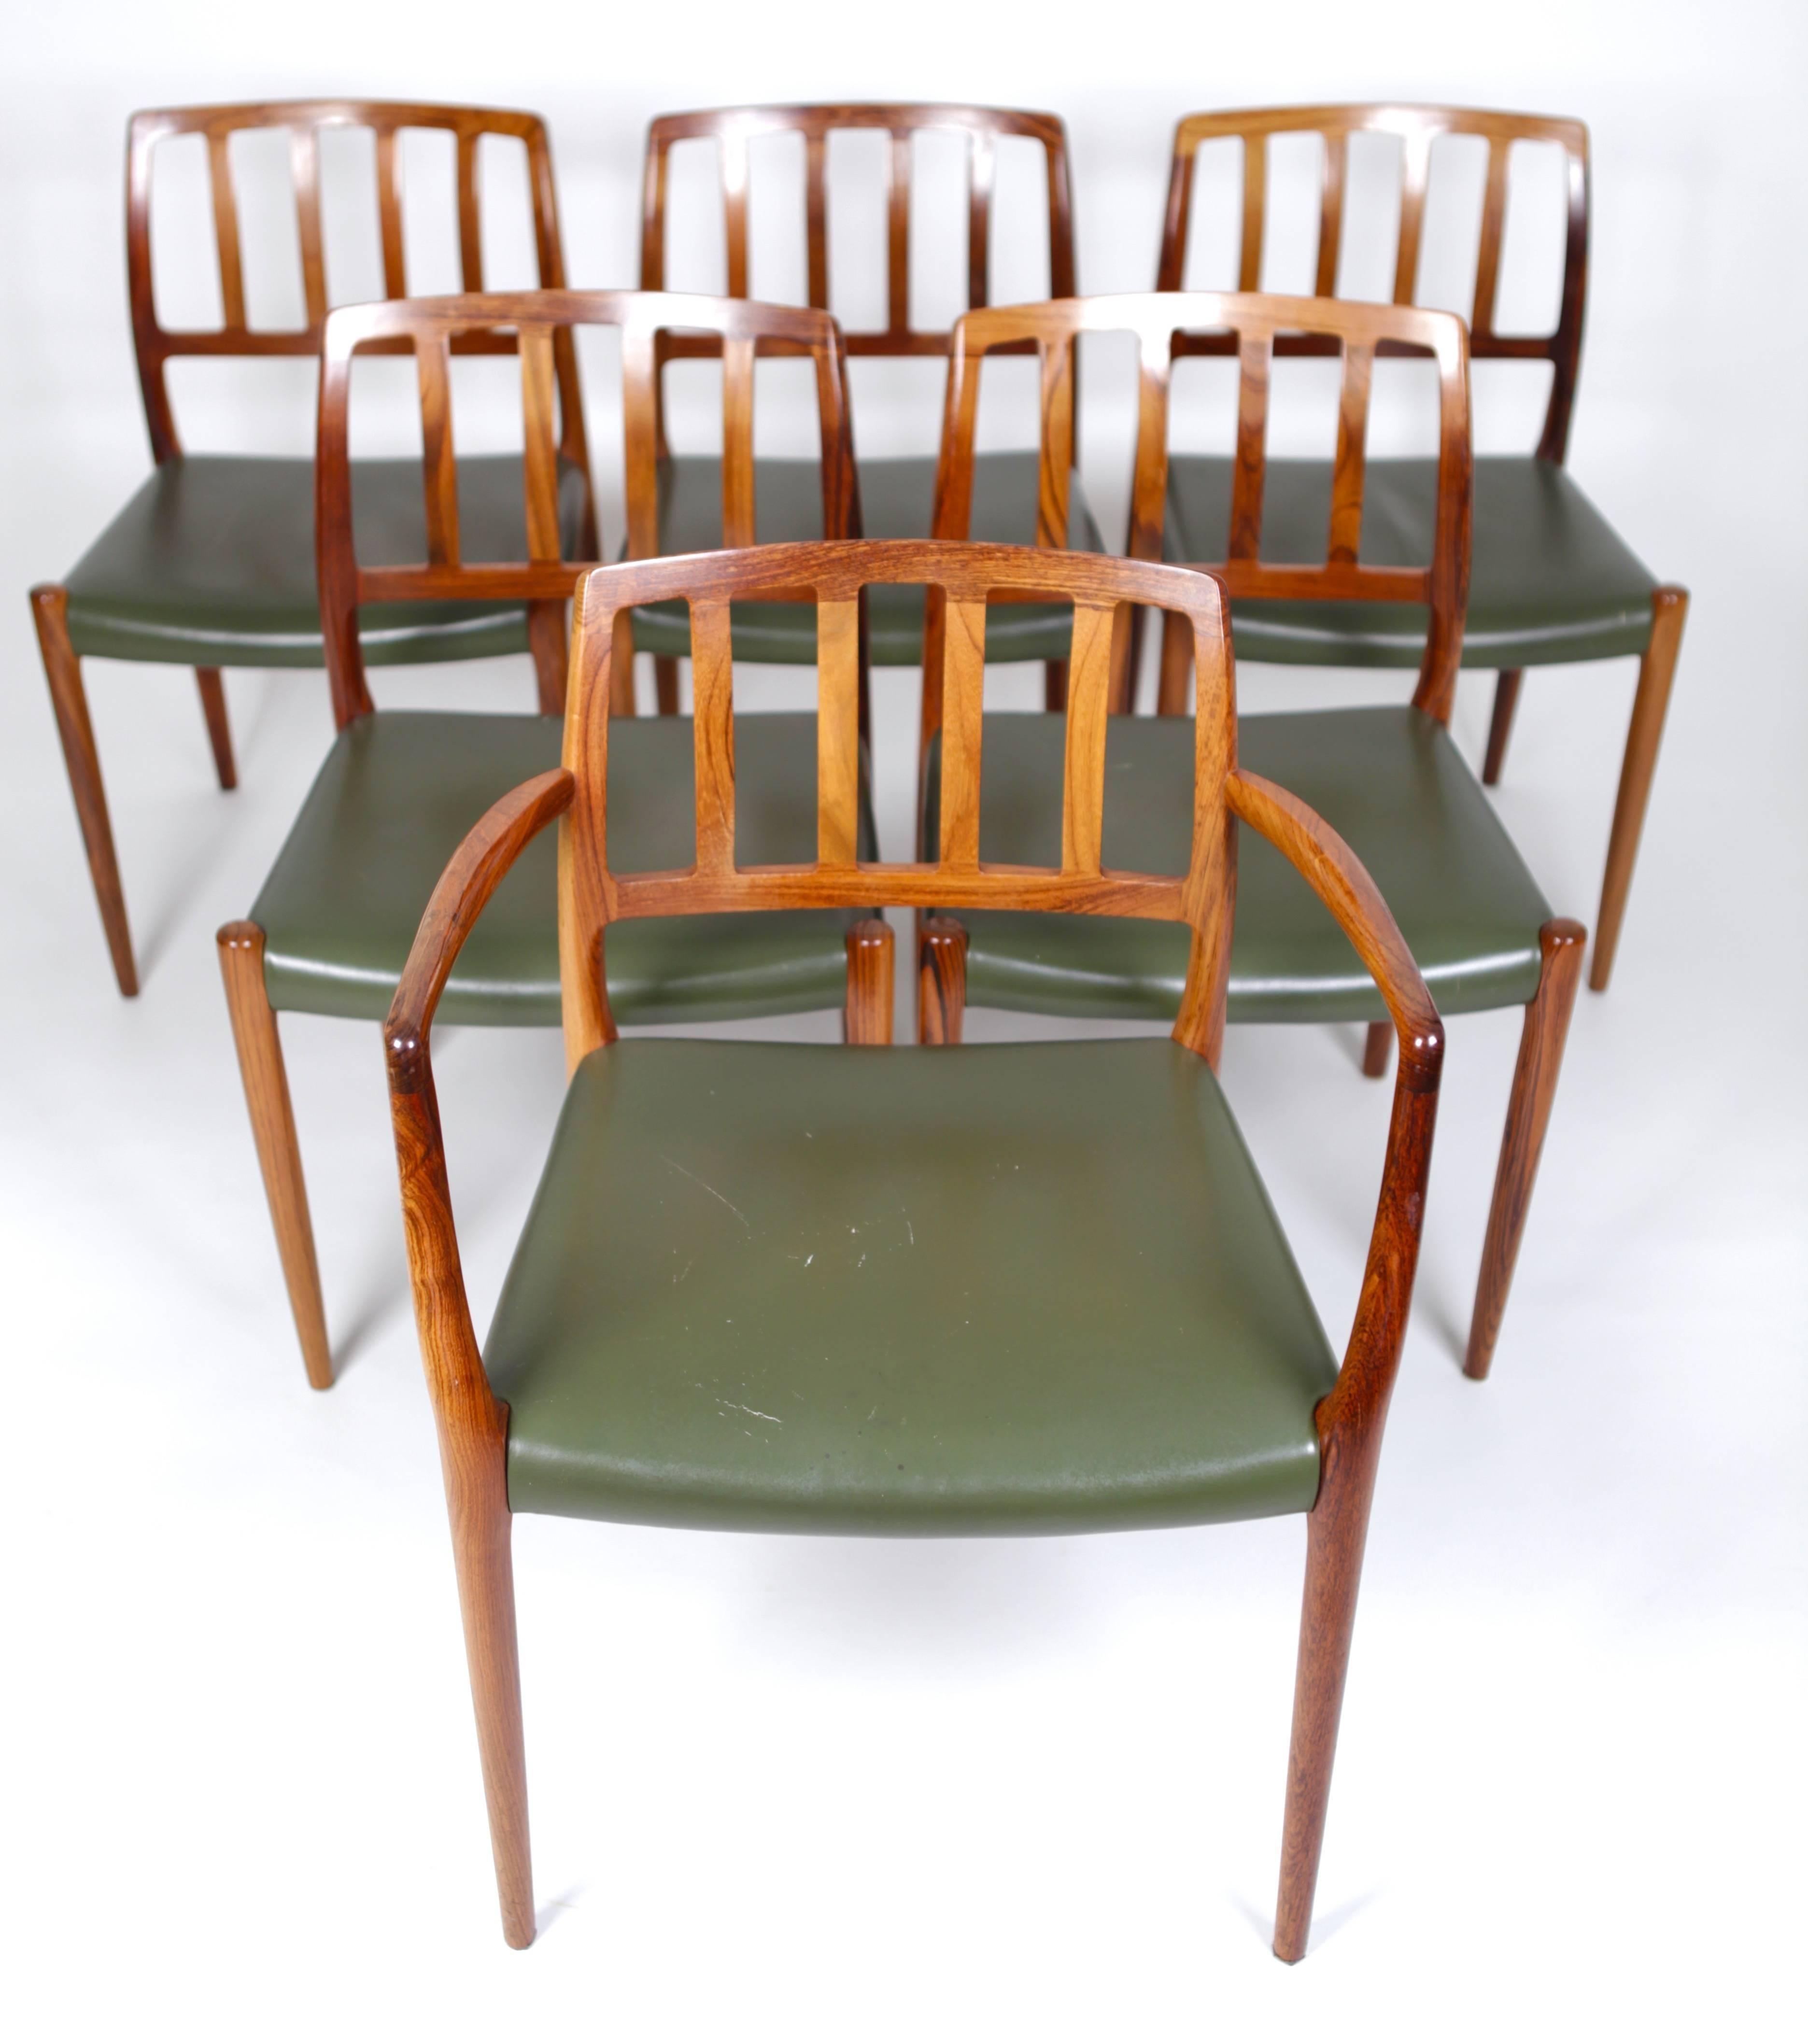 Satz von sechs Esszimmerstühlen (Modell 66 und 83) aus ostindischem Palisanderholz und grünem Leder, entworfen von Niels O. Møller im Jahr 1974,
Hergestellt von P. Jeppesen.
        